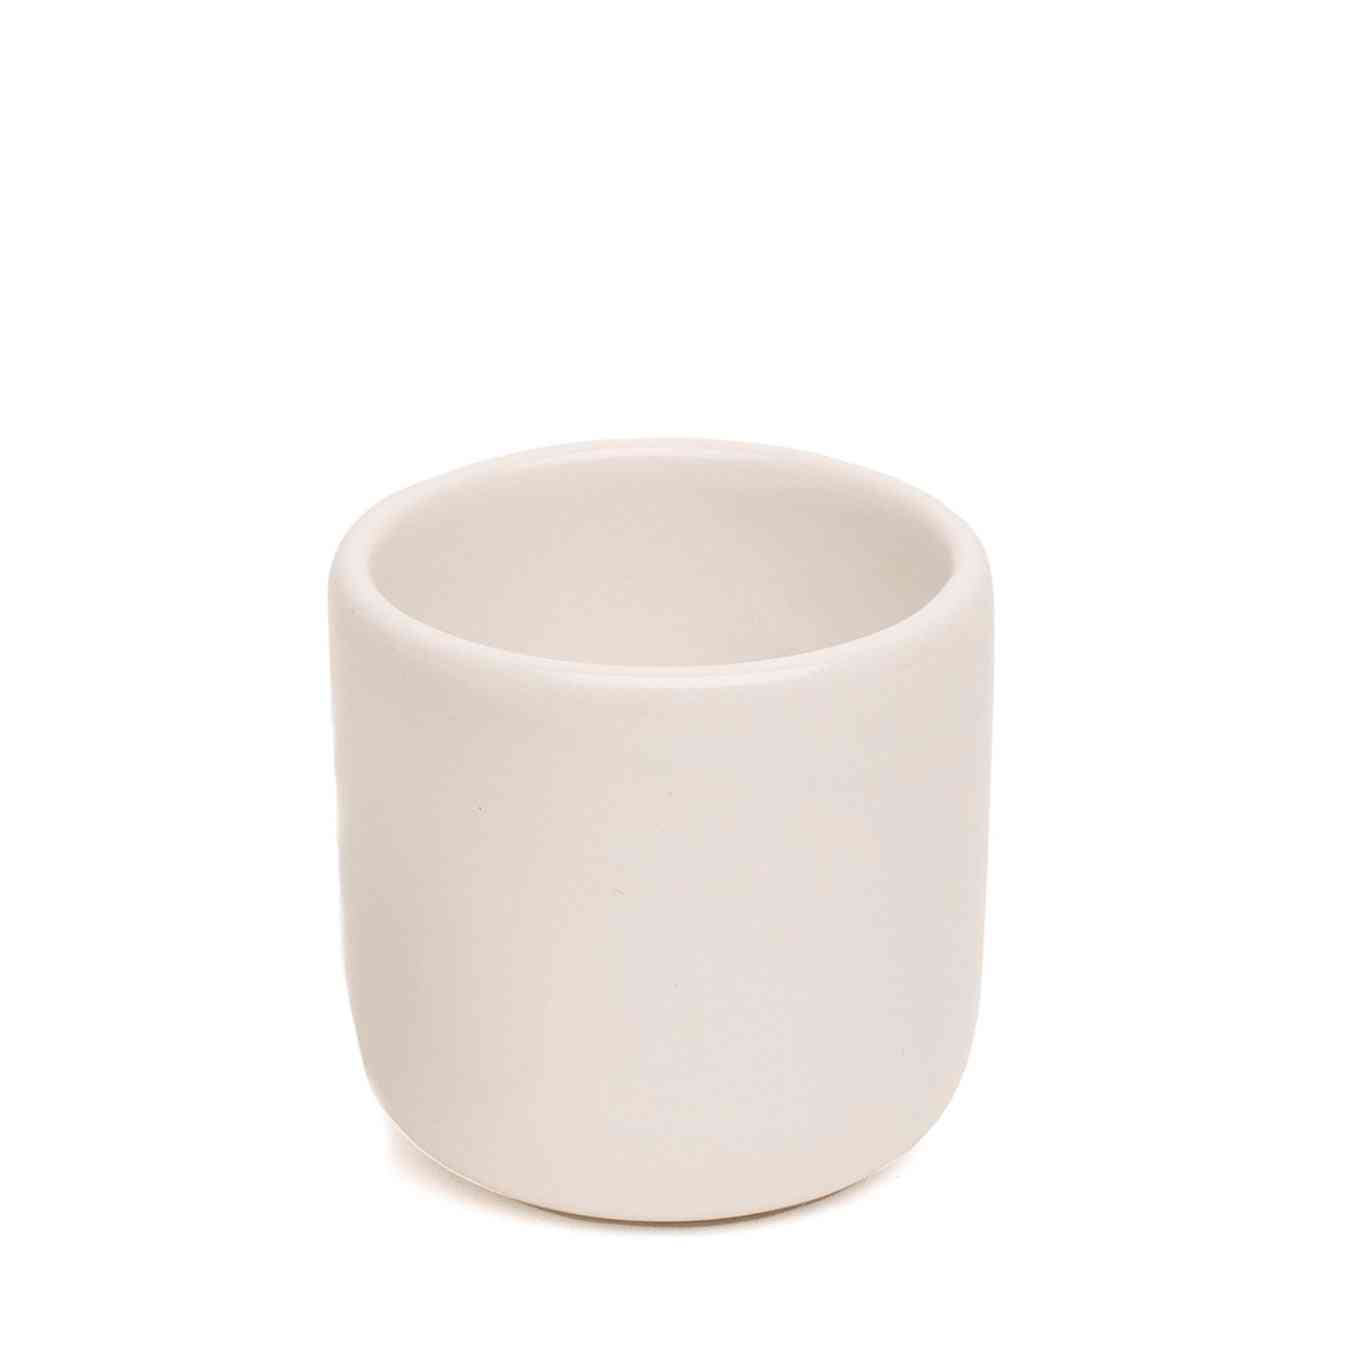 Ceramic Espresso - Hot And Cold Drinks Mug